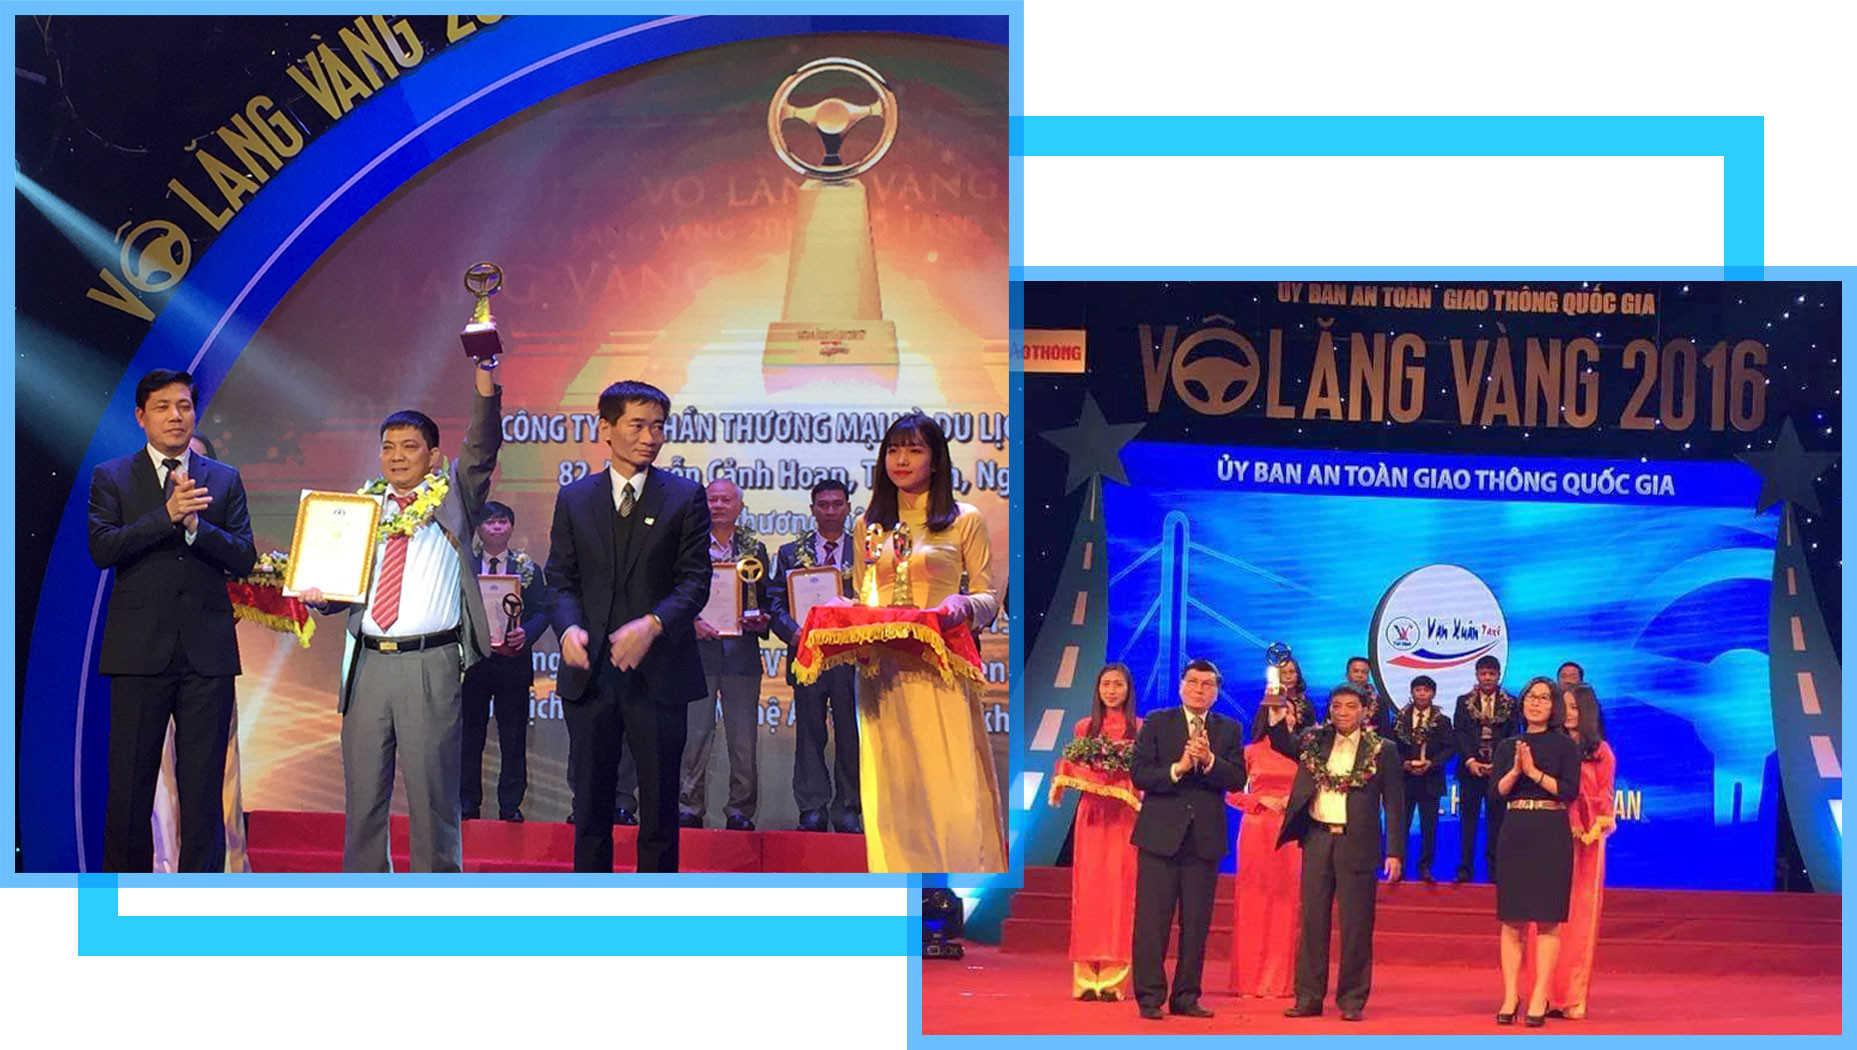 Vạn Xuân Taxi là doanh nghiệp taxi đầu tiên của tỉnh được UB ATGT Quốc gia trao giải thưởng “Vô lăng vàng” ba năm liên tiếp 2015, 2016, 2017.